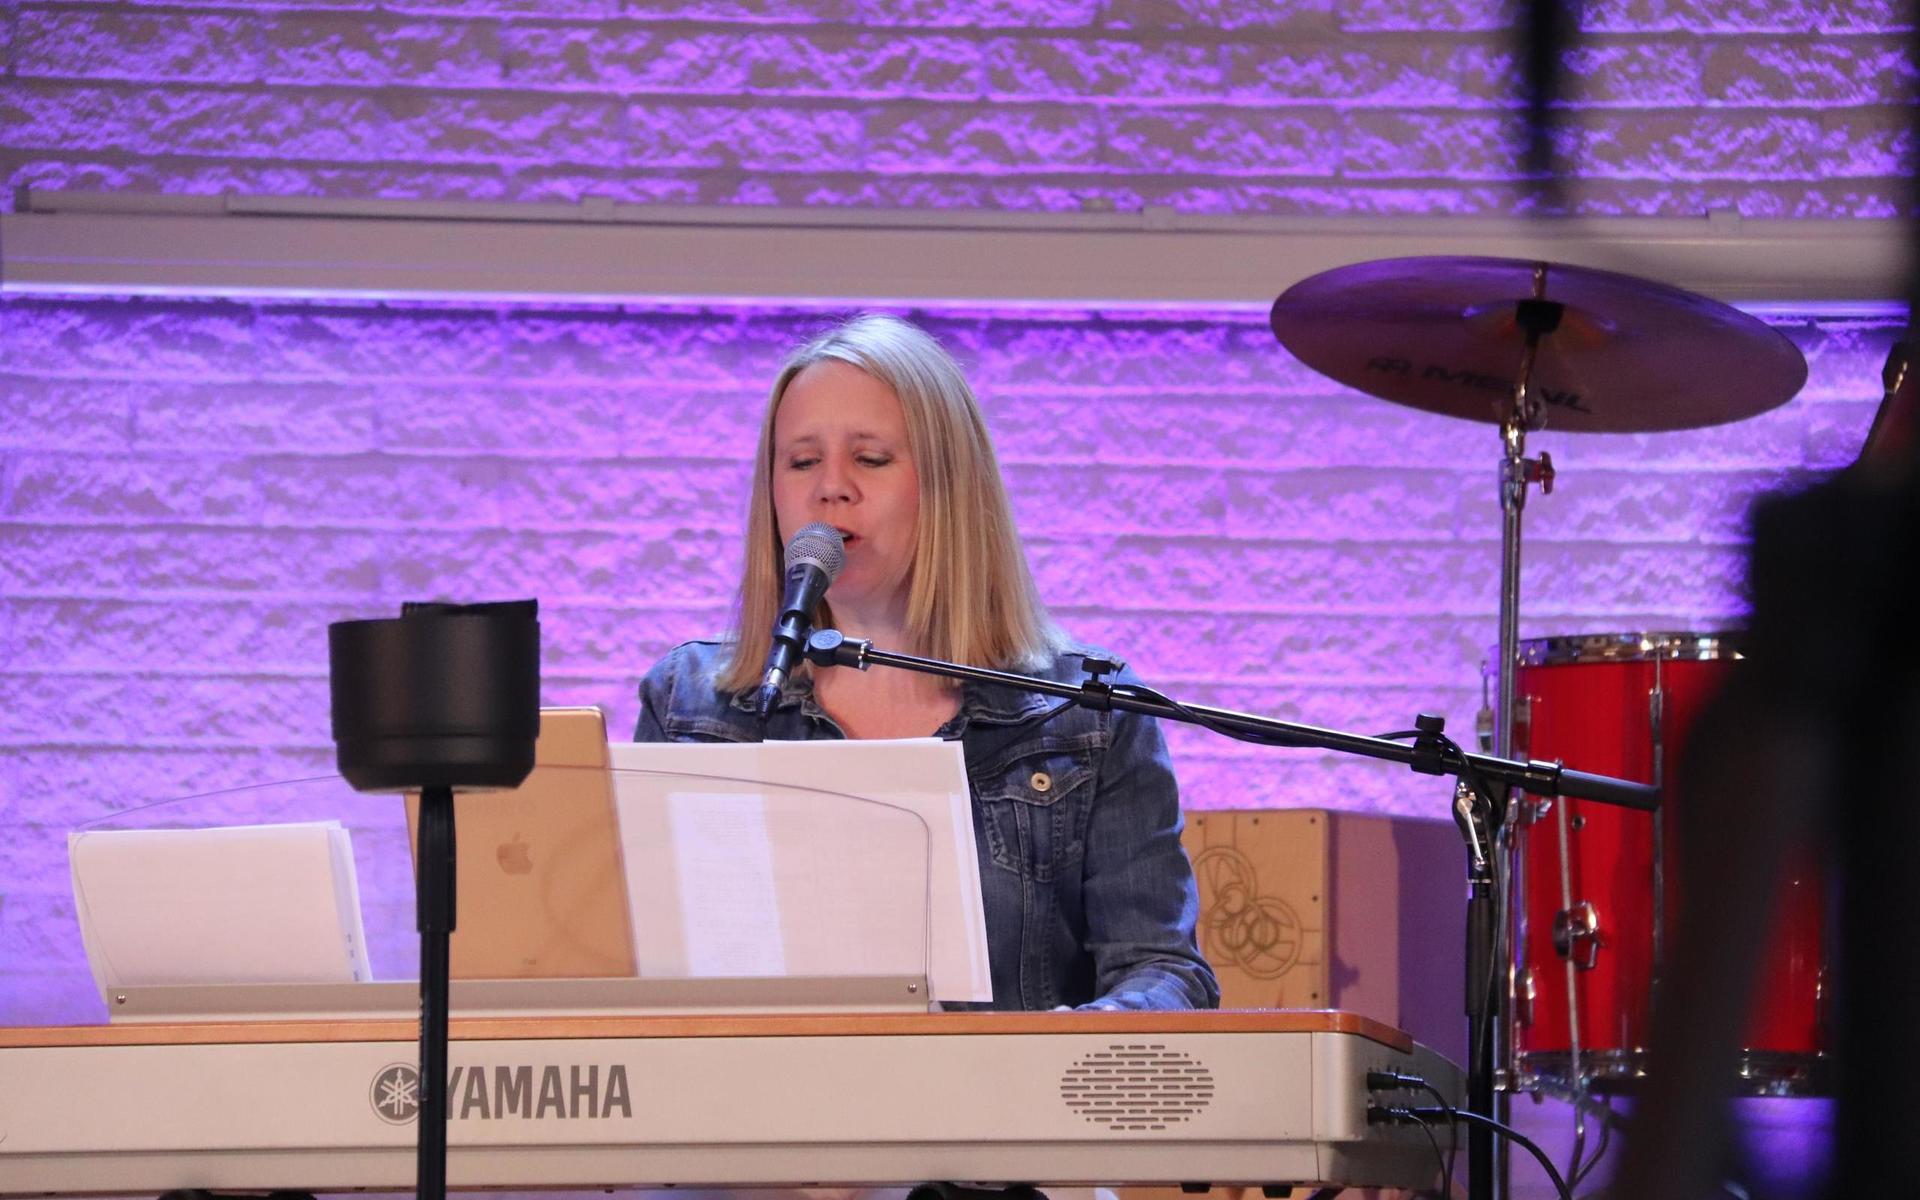 AnnaMaria Bergqvist är musikpastor i kyrkan. Pingstkyrkans gudstjänster är ofta fulla av musik, och det kan bli en utmaning när församlingsmedlemmarna inte är på plats och sjunger med. 